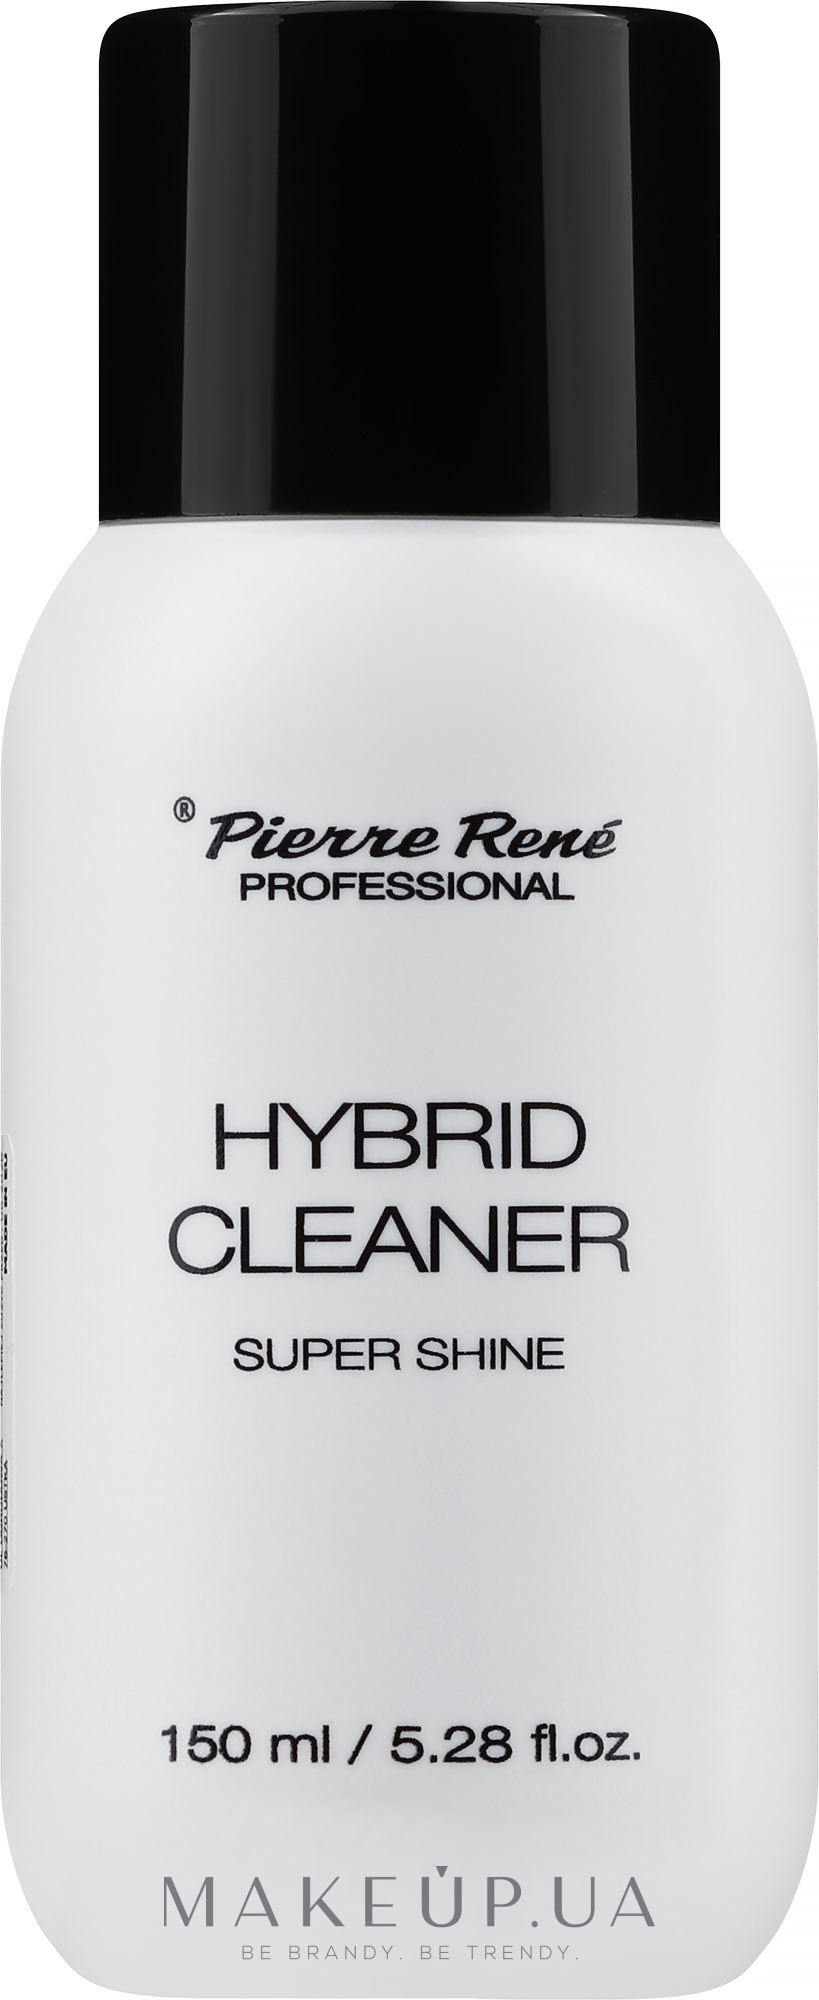 Рідина для знежирення - Pierre Rene Professional Hybrid Cleaner Super Shine — фото 150ml